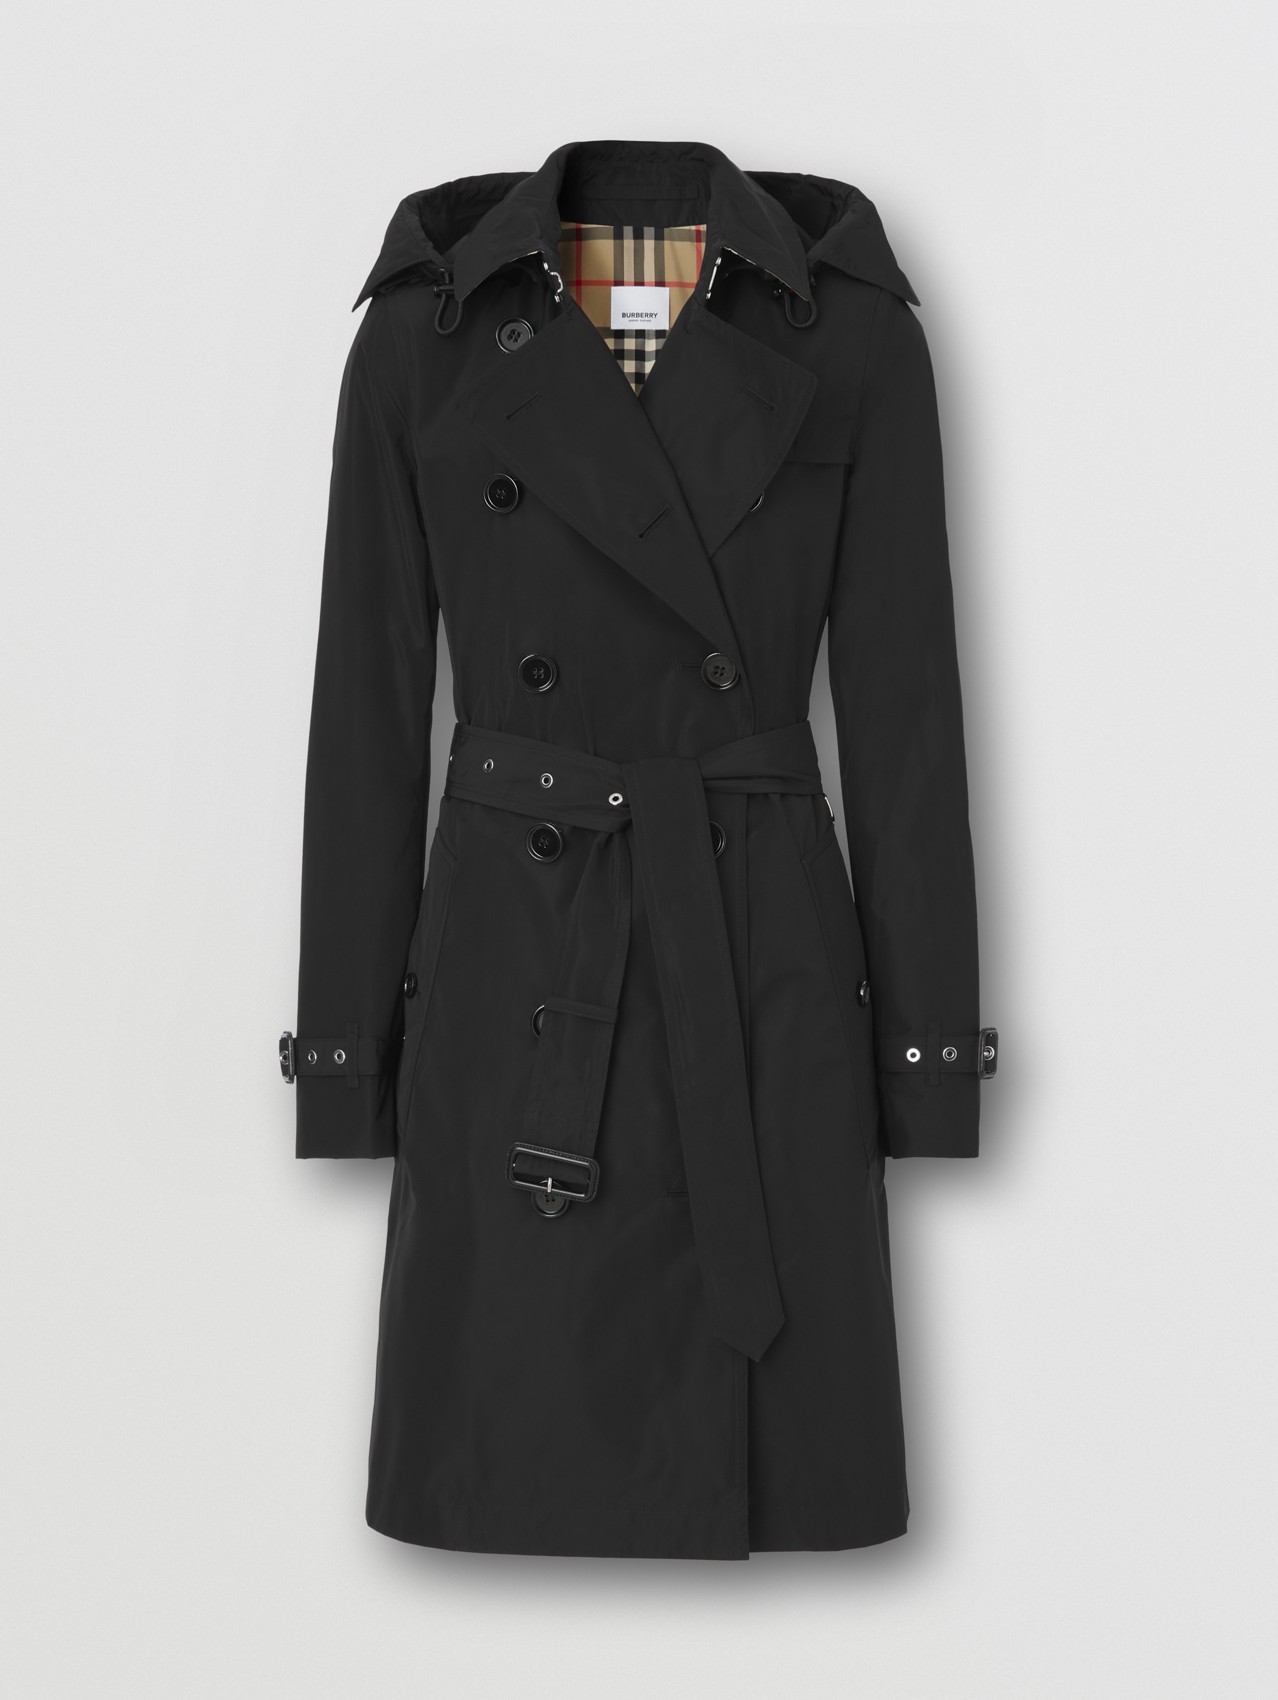 Burberry Baumwolle Andere materialien trench coat in Schwarz Damen Bekleidung Mäntel Regenjacken und Trenchcoats 